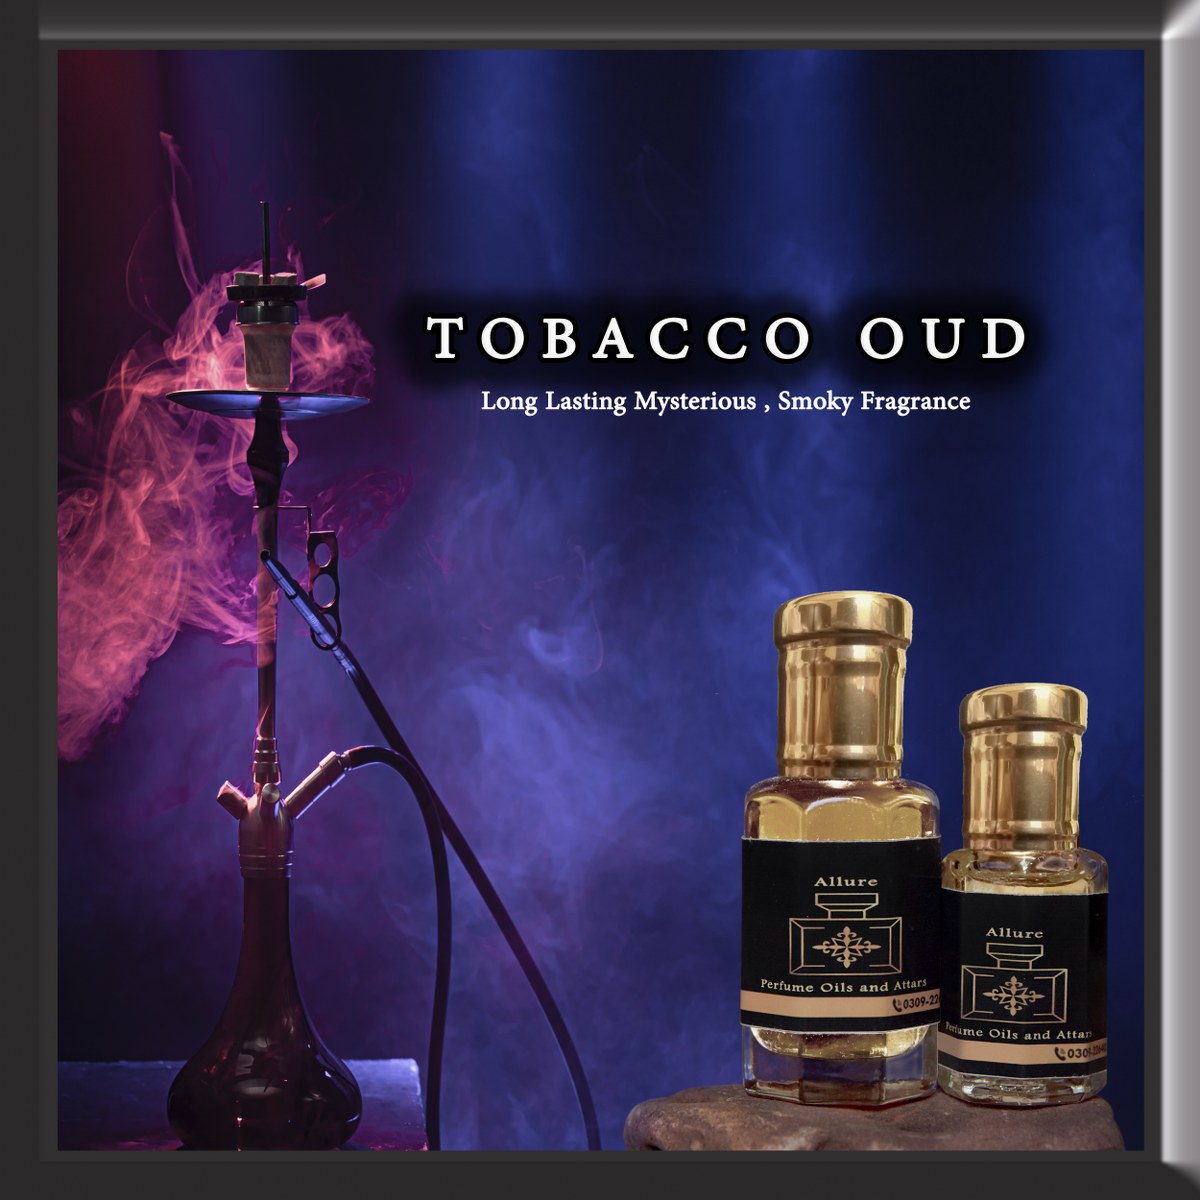 Tobacco Oud high quality perfume oil (attar)